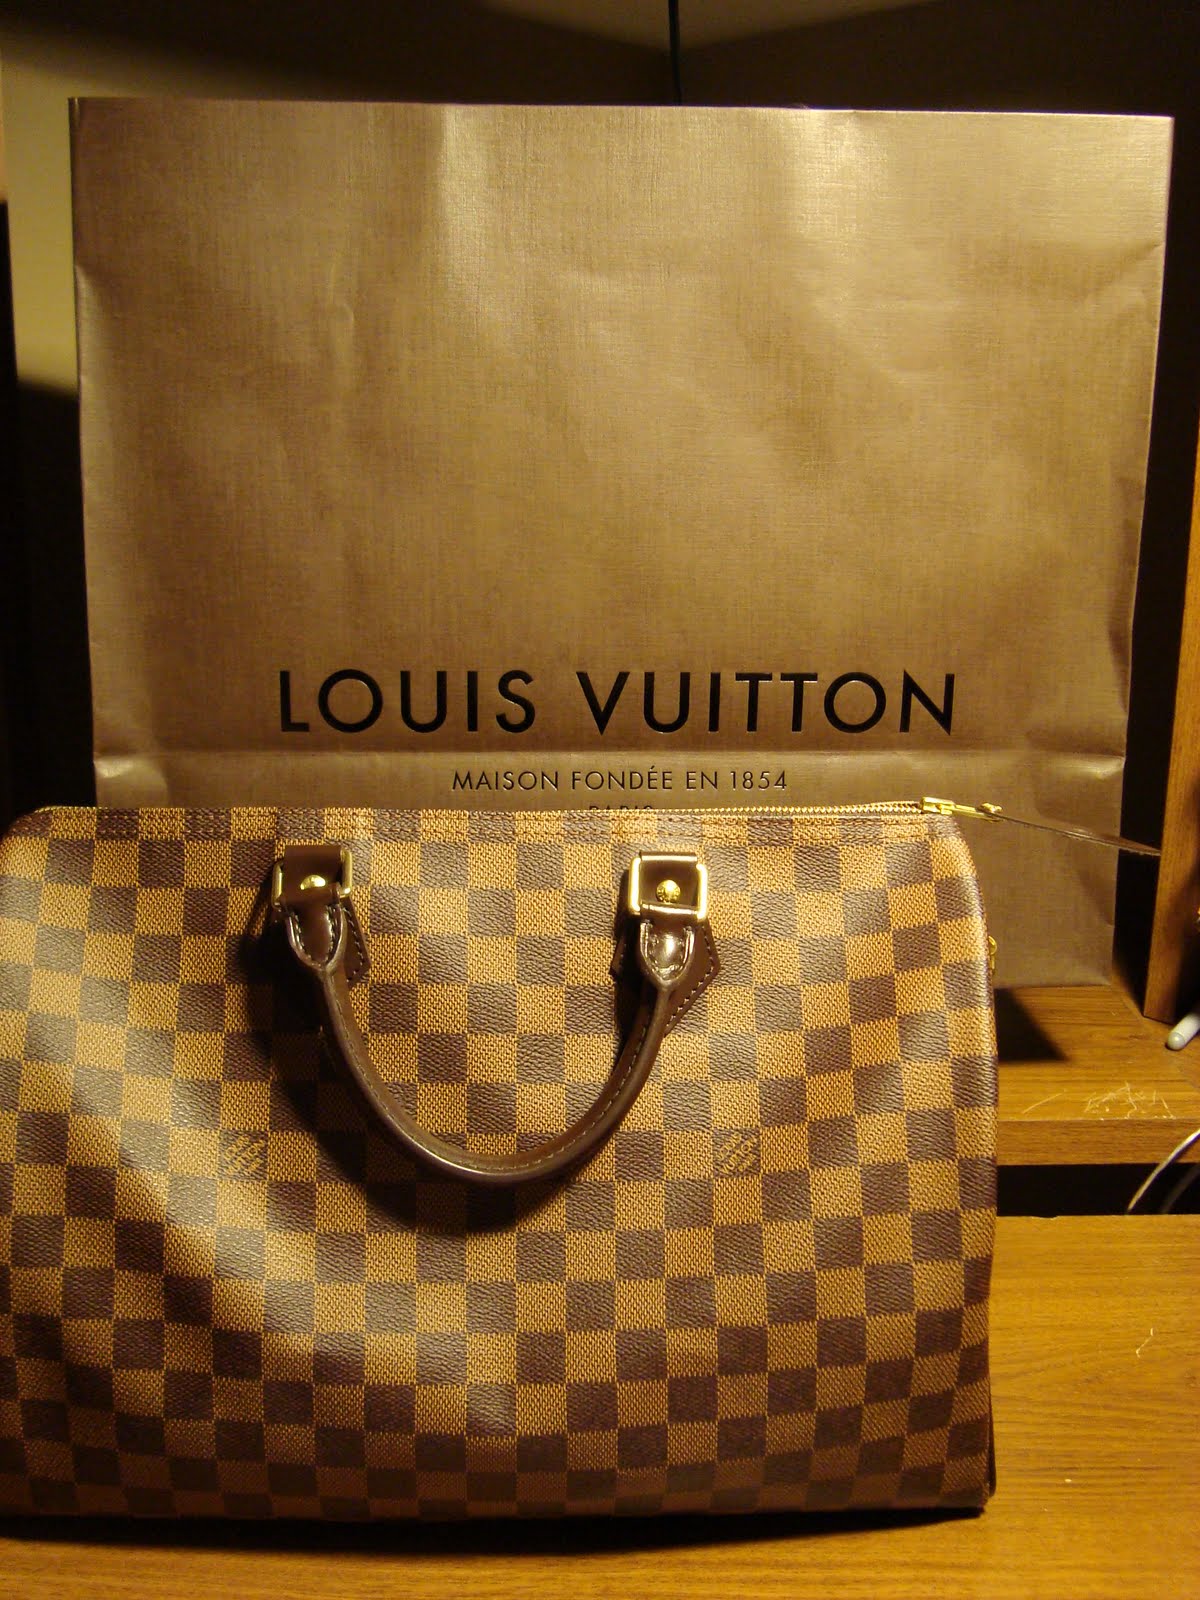 My First Custom Louis Vuitton! 